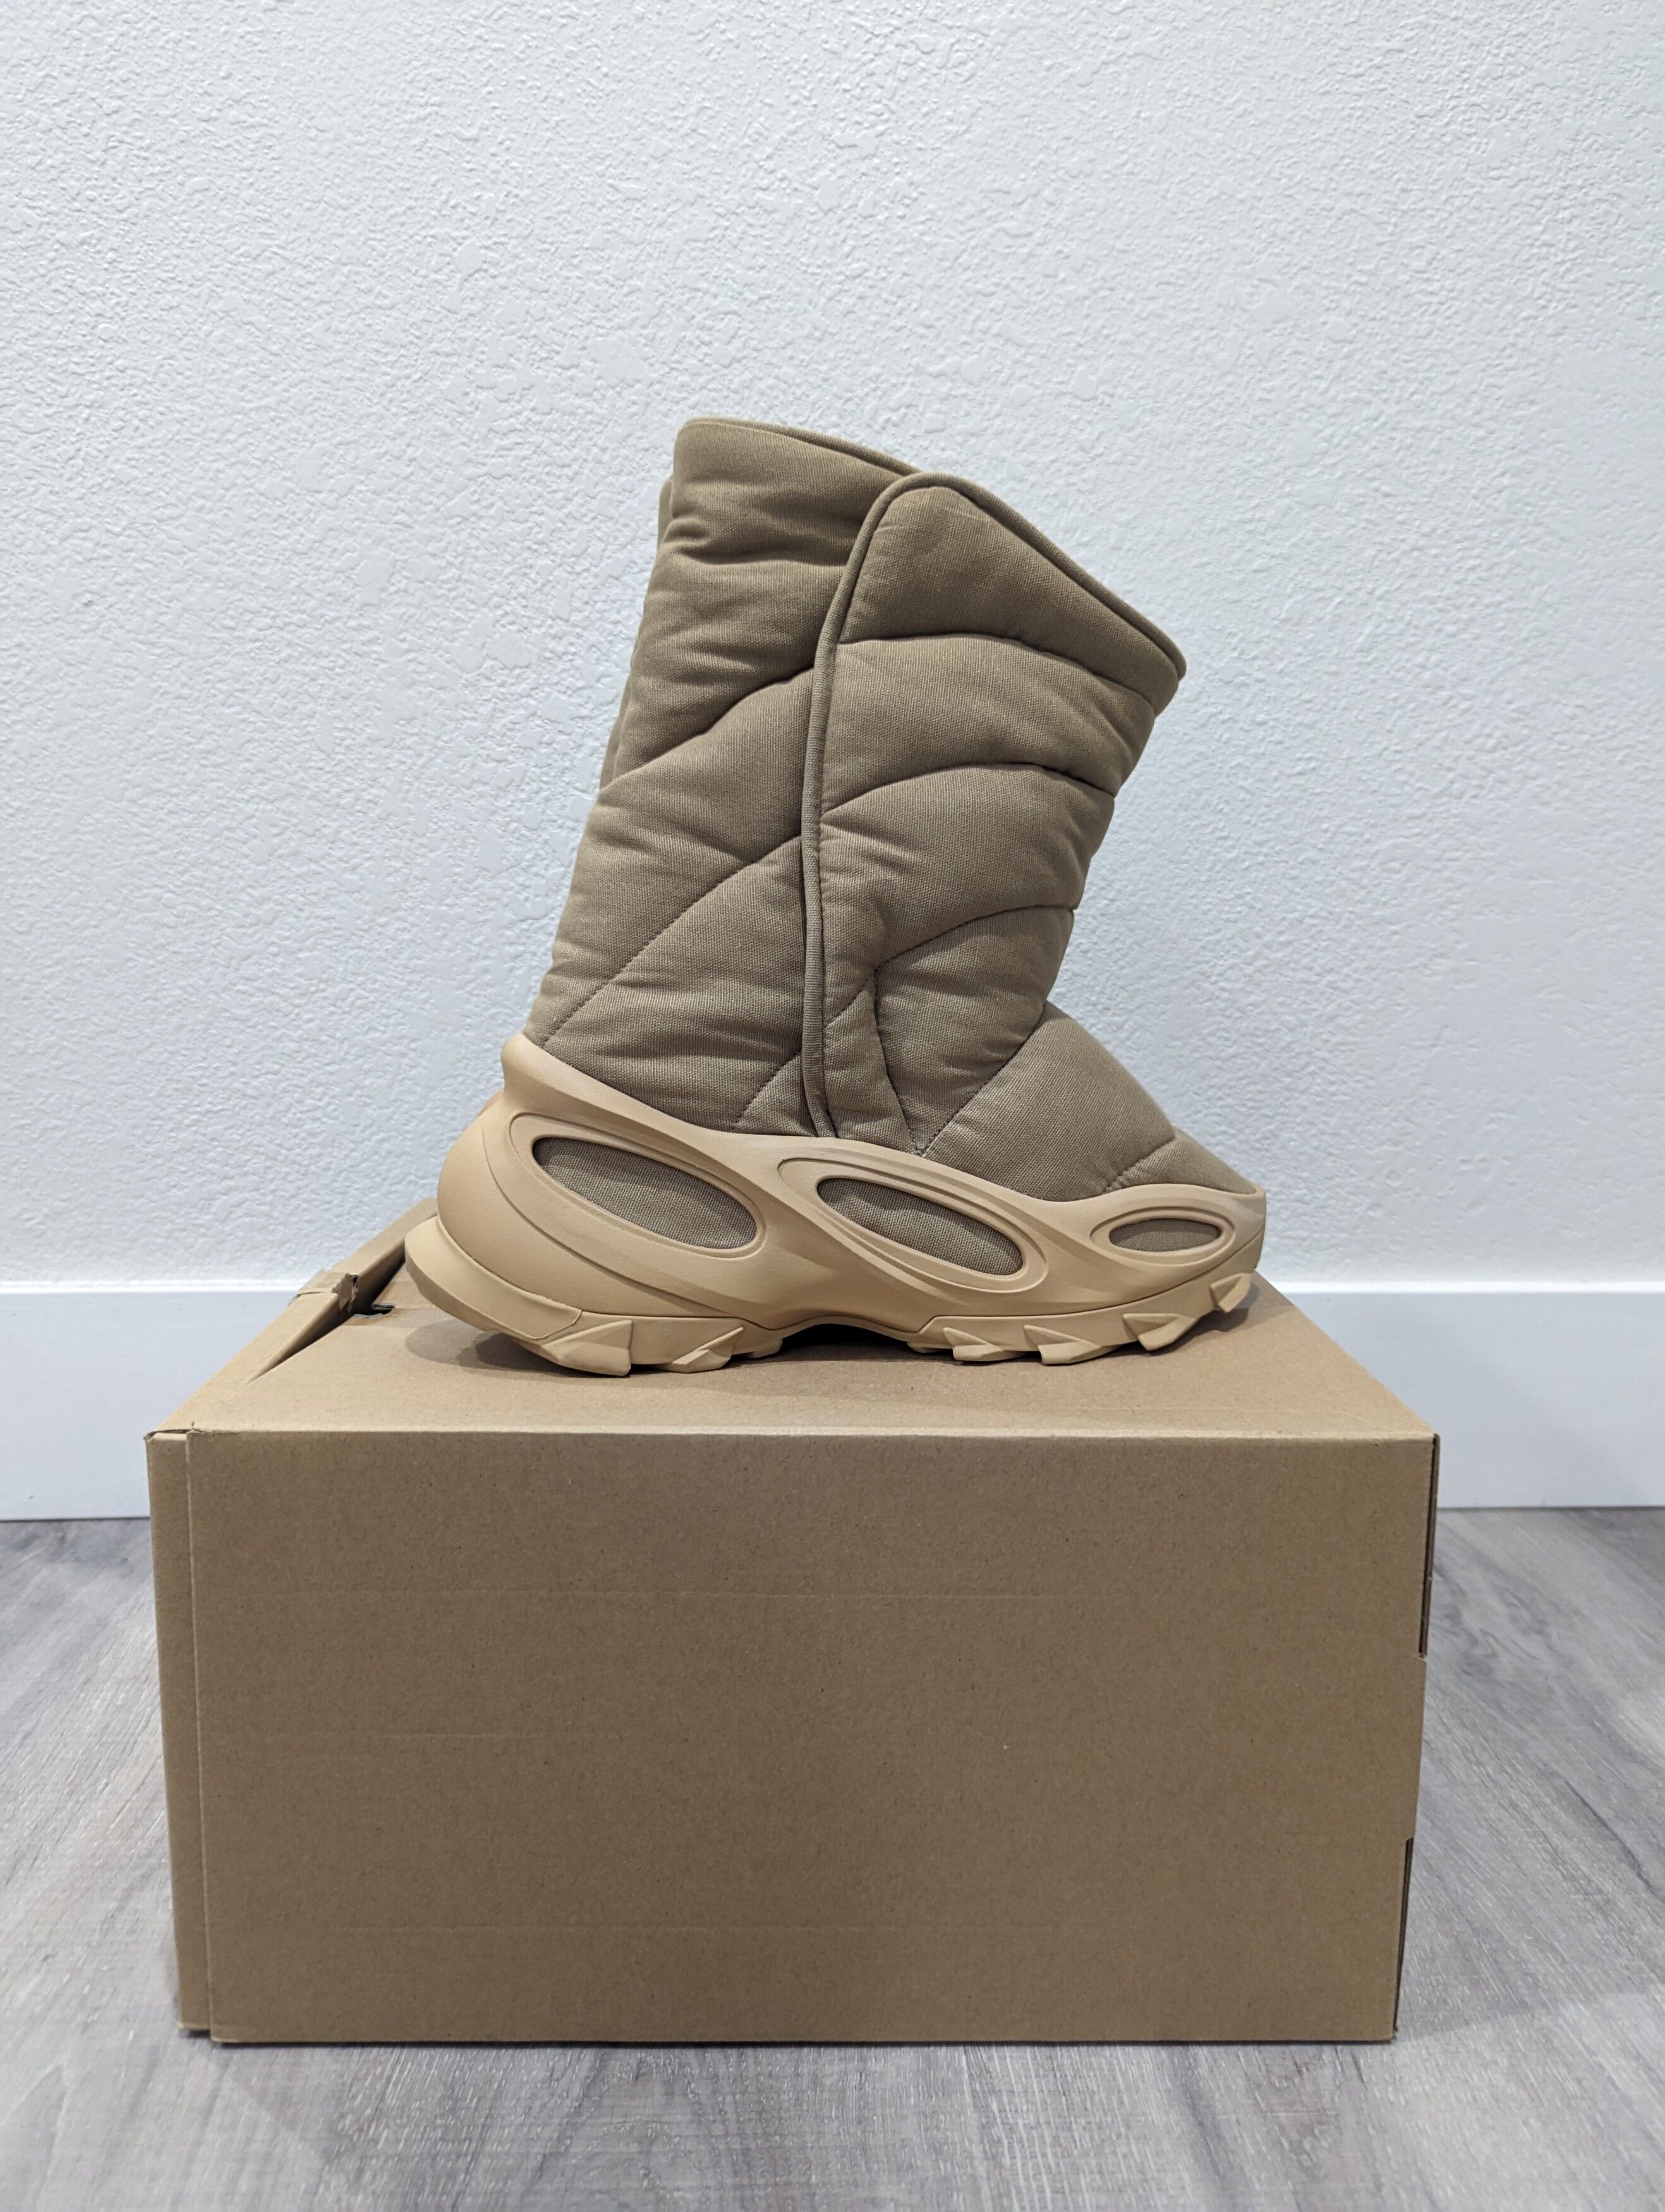 Adidas Yeezy NSLTD Boots + Jacket | Grailed